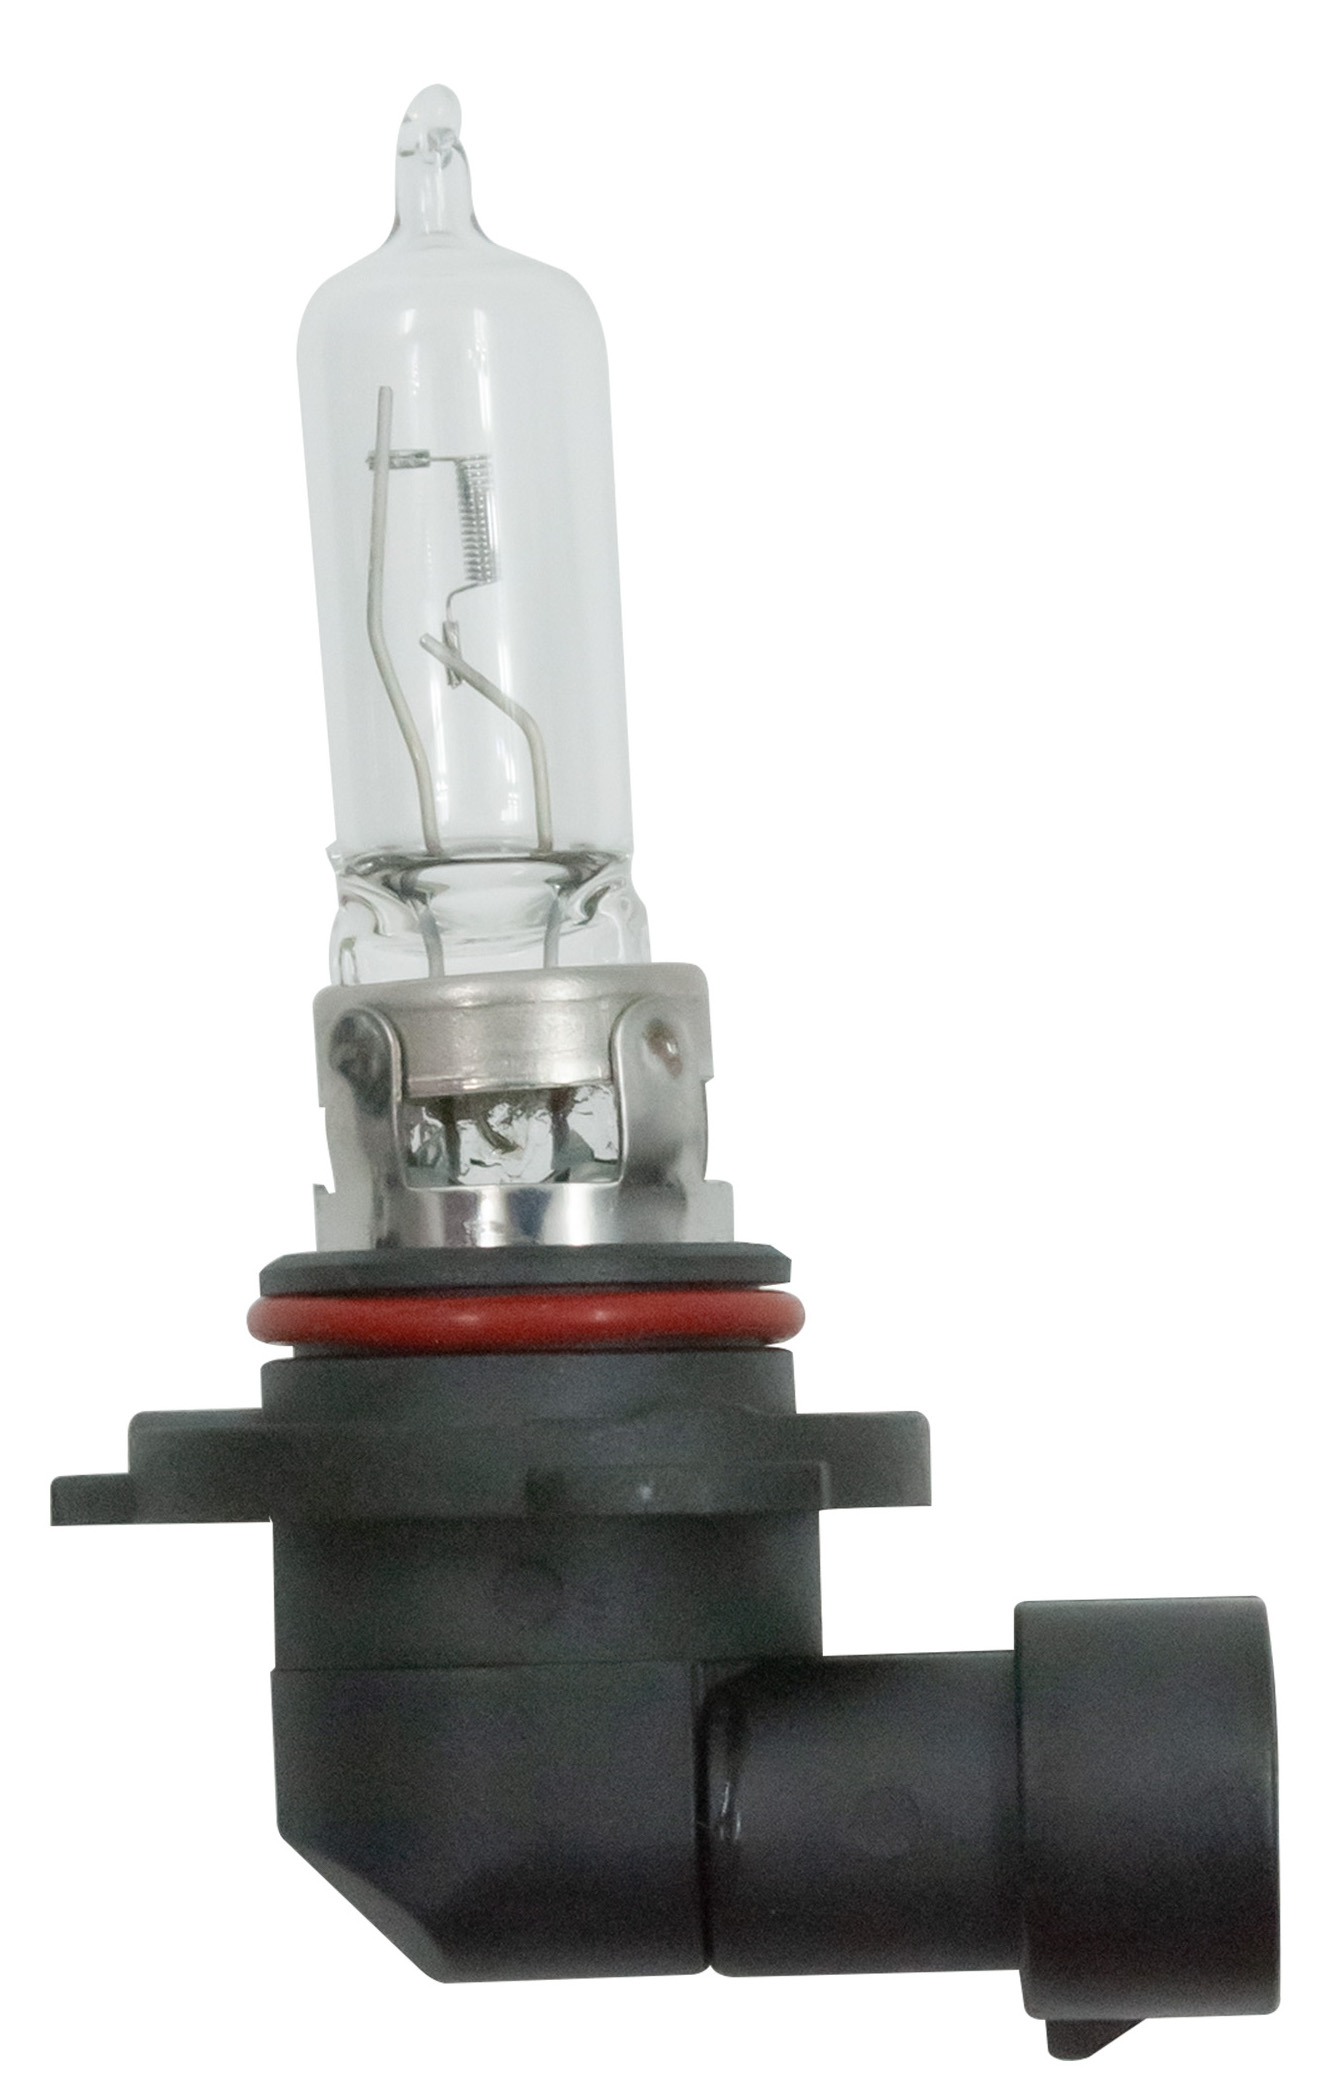 Ampoule 12V HB3 60W (vendu à l'unité) pas cher